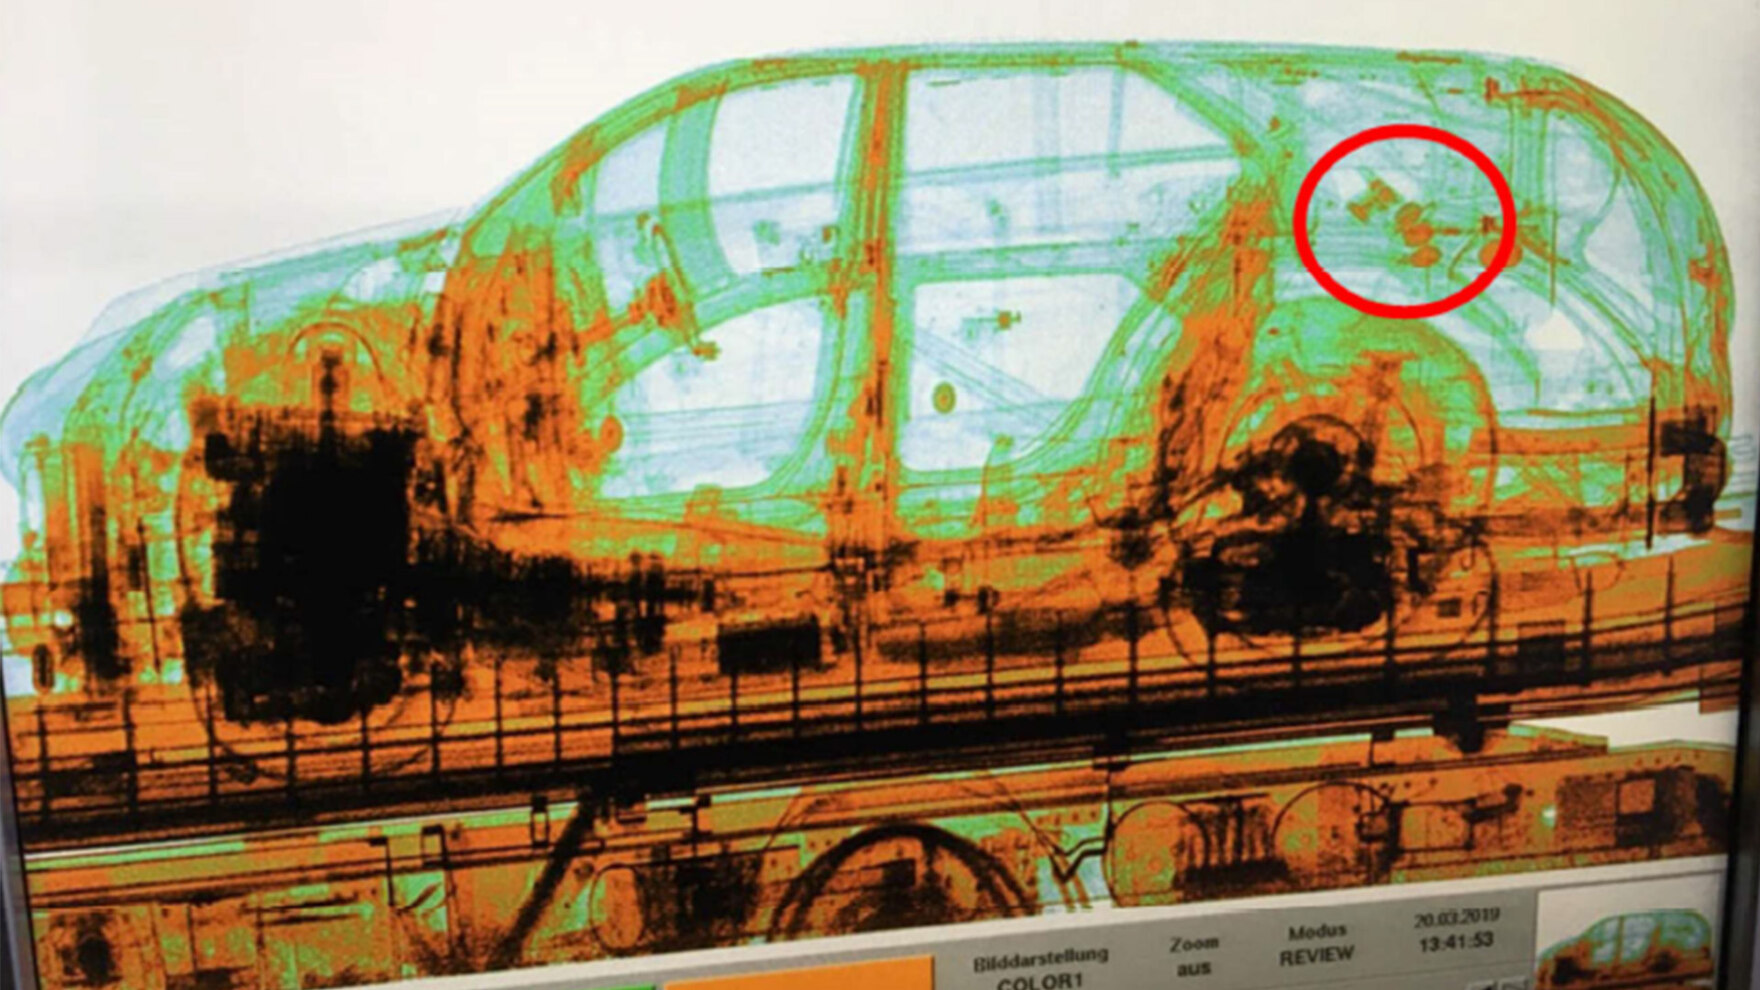 Eine Röntgenaufnahme eines Autos in Grün- und Orange-Tönen zeigt, wo in Hohlräumen des Wagens Granaten versteckt wurden. Einige dieser Granaten sind mit einem roten Kreis gekennzeichnet.